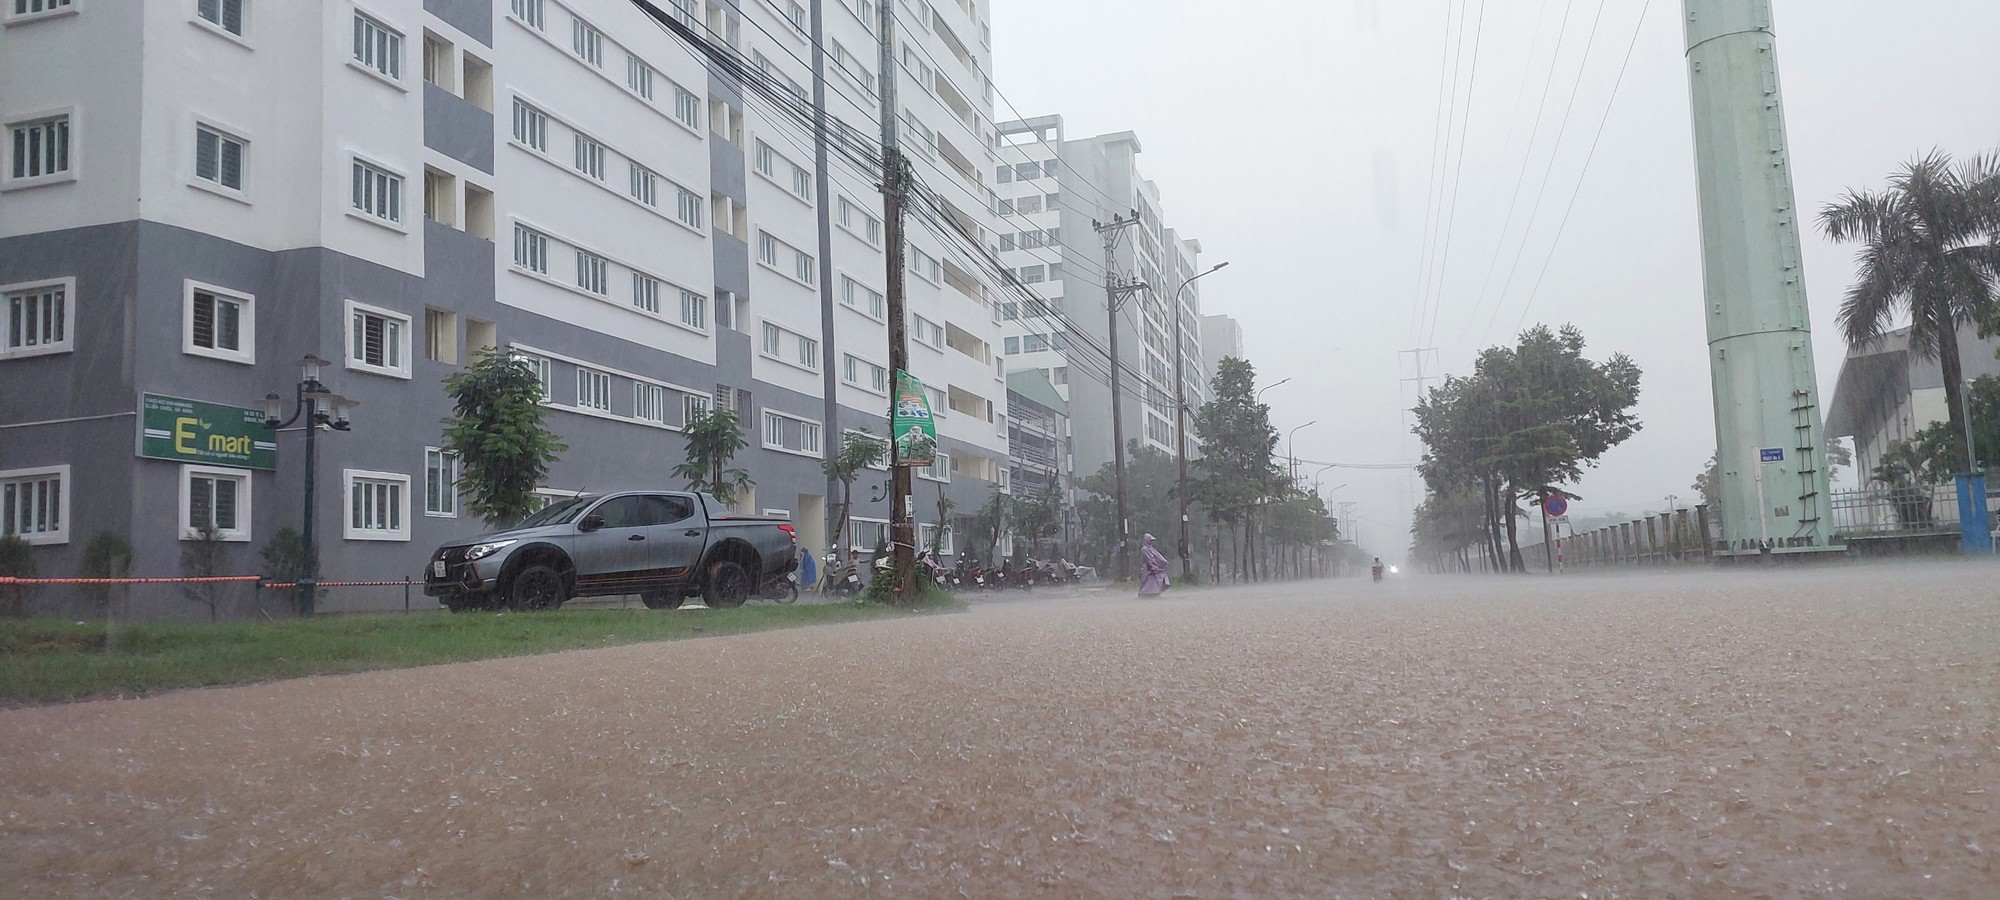 Đường phố Đà Nẵng lại ngập sau mưa lớn, ô tô, xe máy bì bõm lội nước - Ảnh 11.